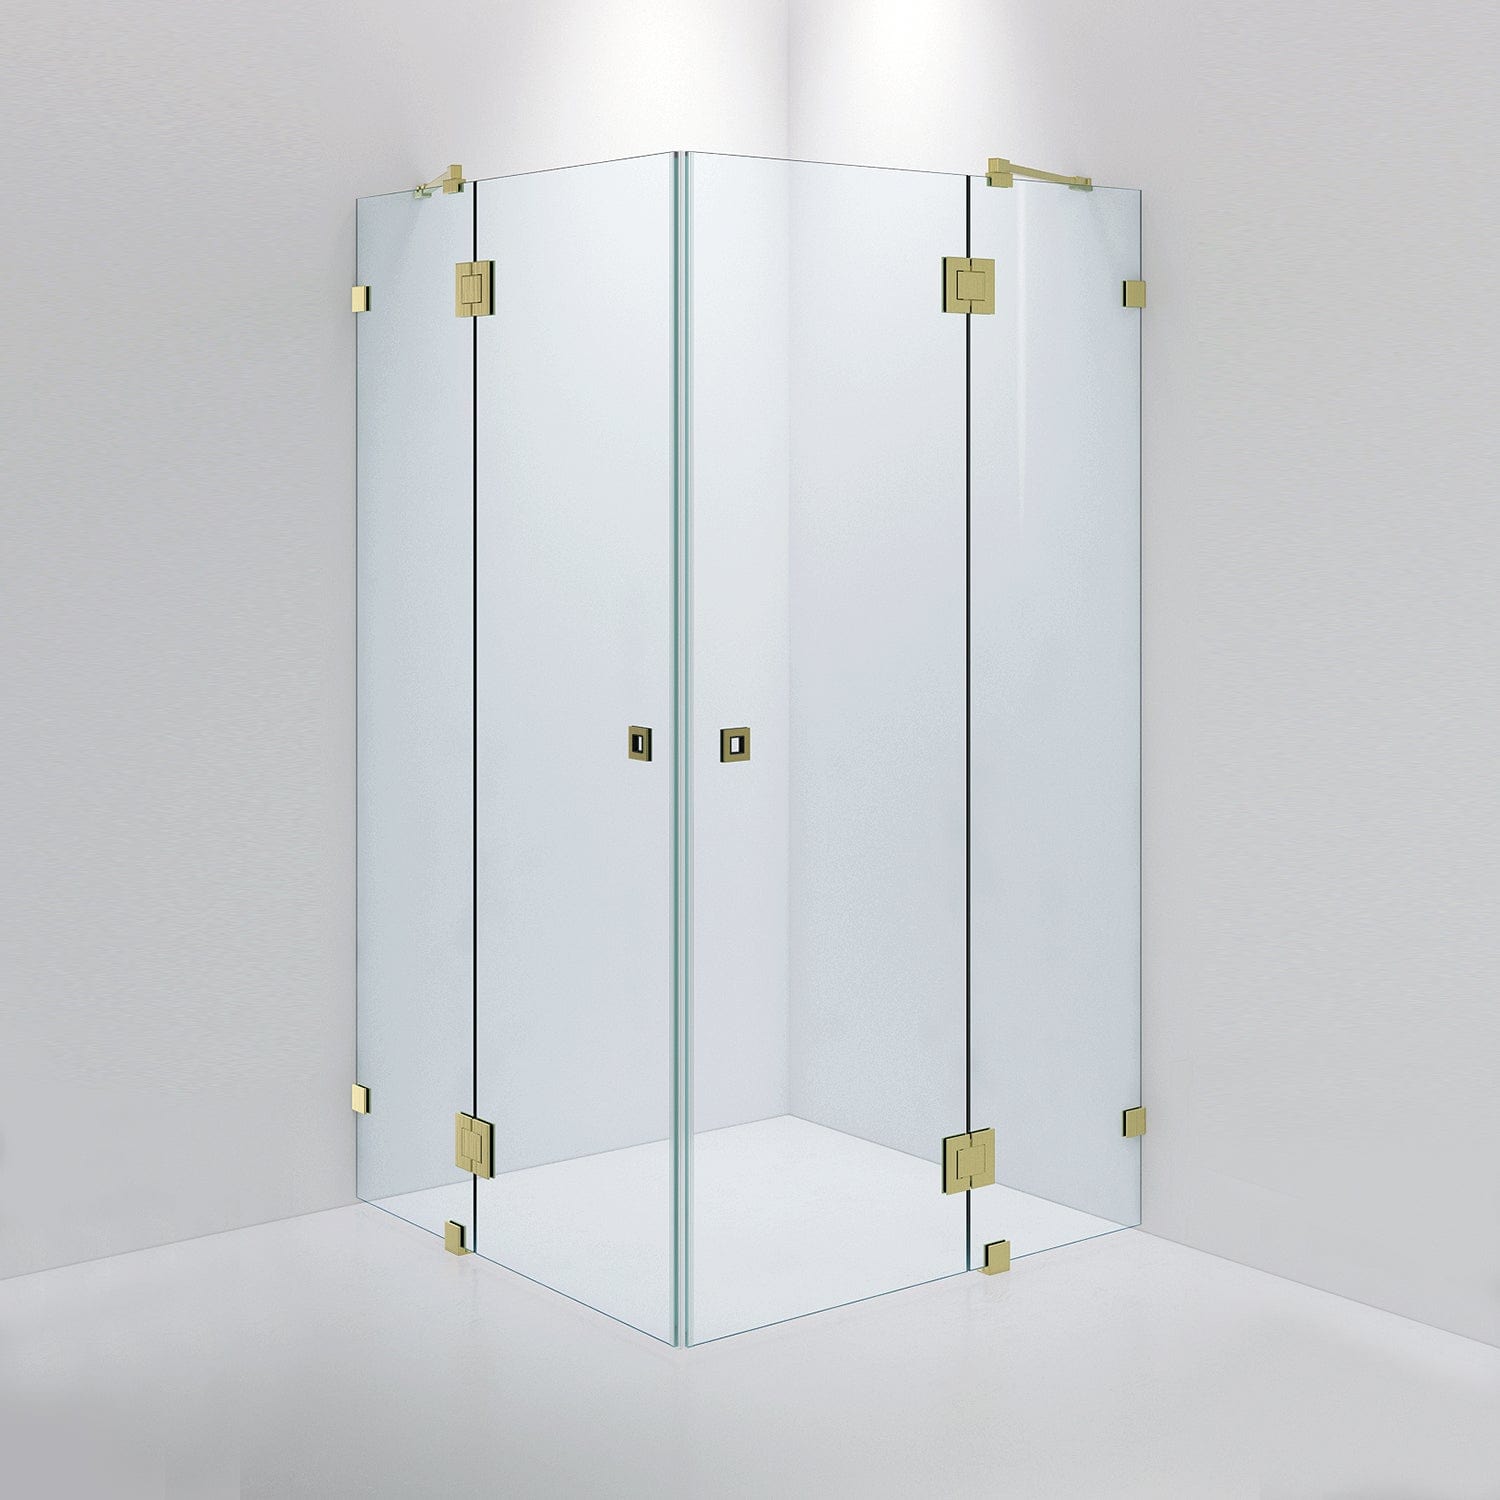 INR Iconic Nordic Rooms Dusjhjørne ARC 16 Måltilpasset Brushed Brass / Timeless Klart Glass Dusjhjørne